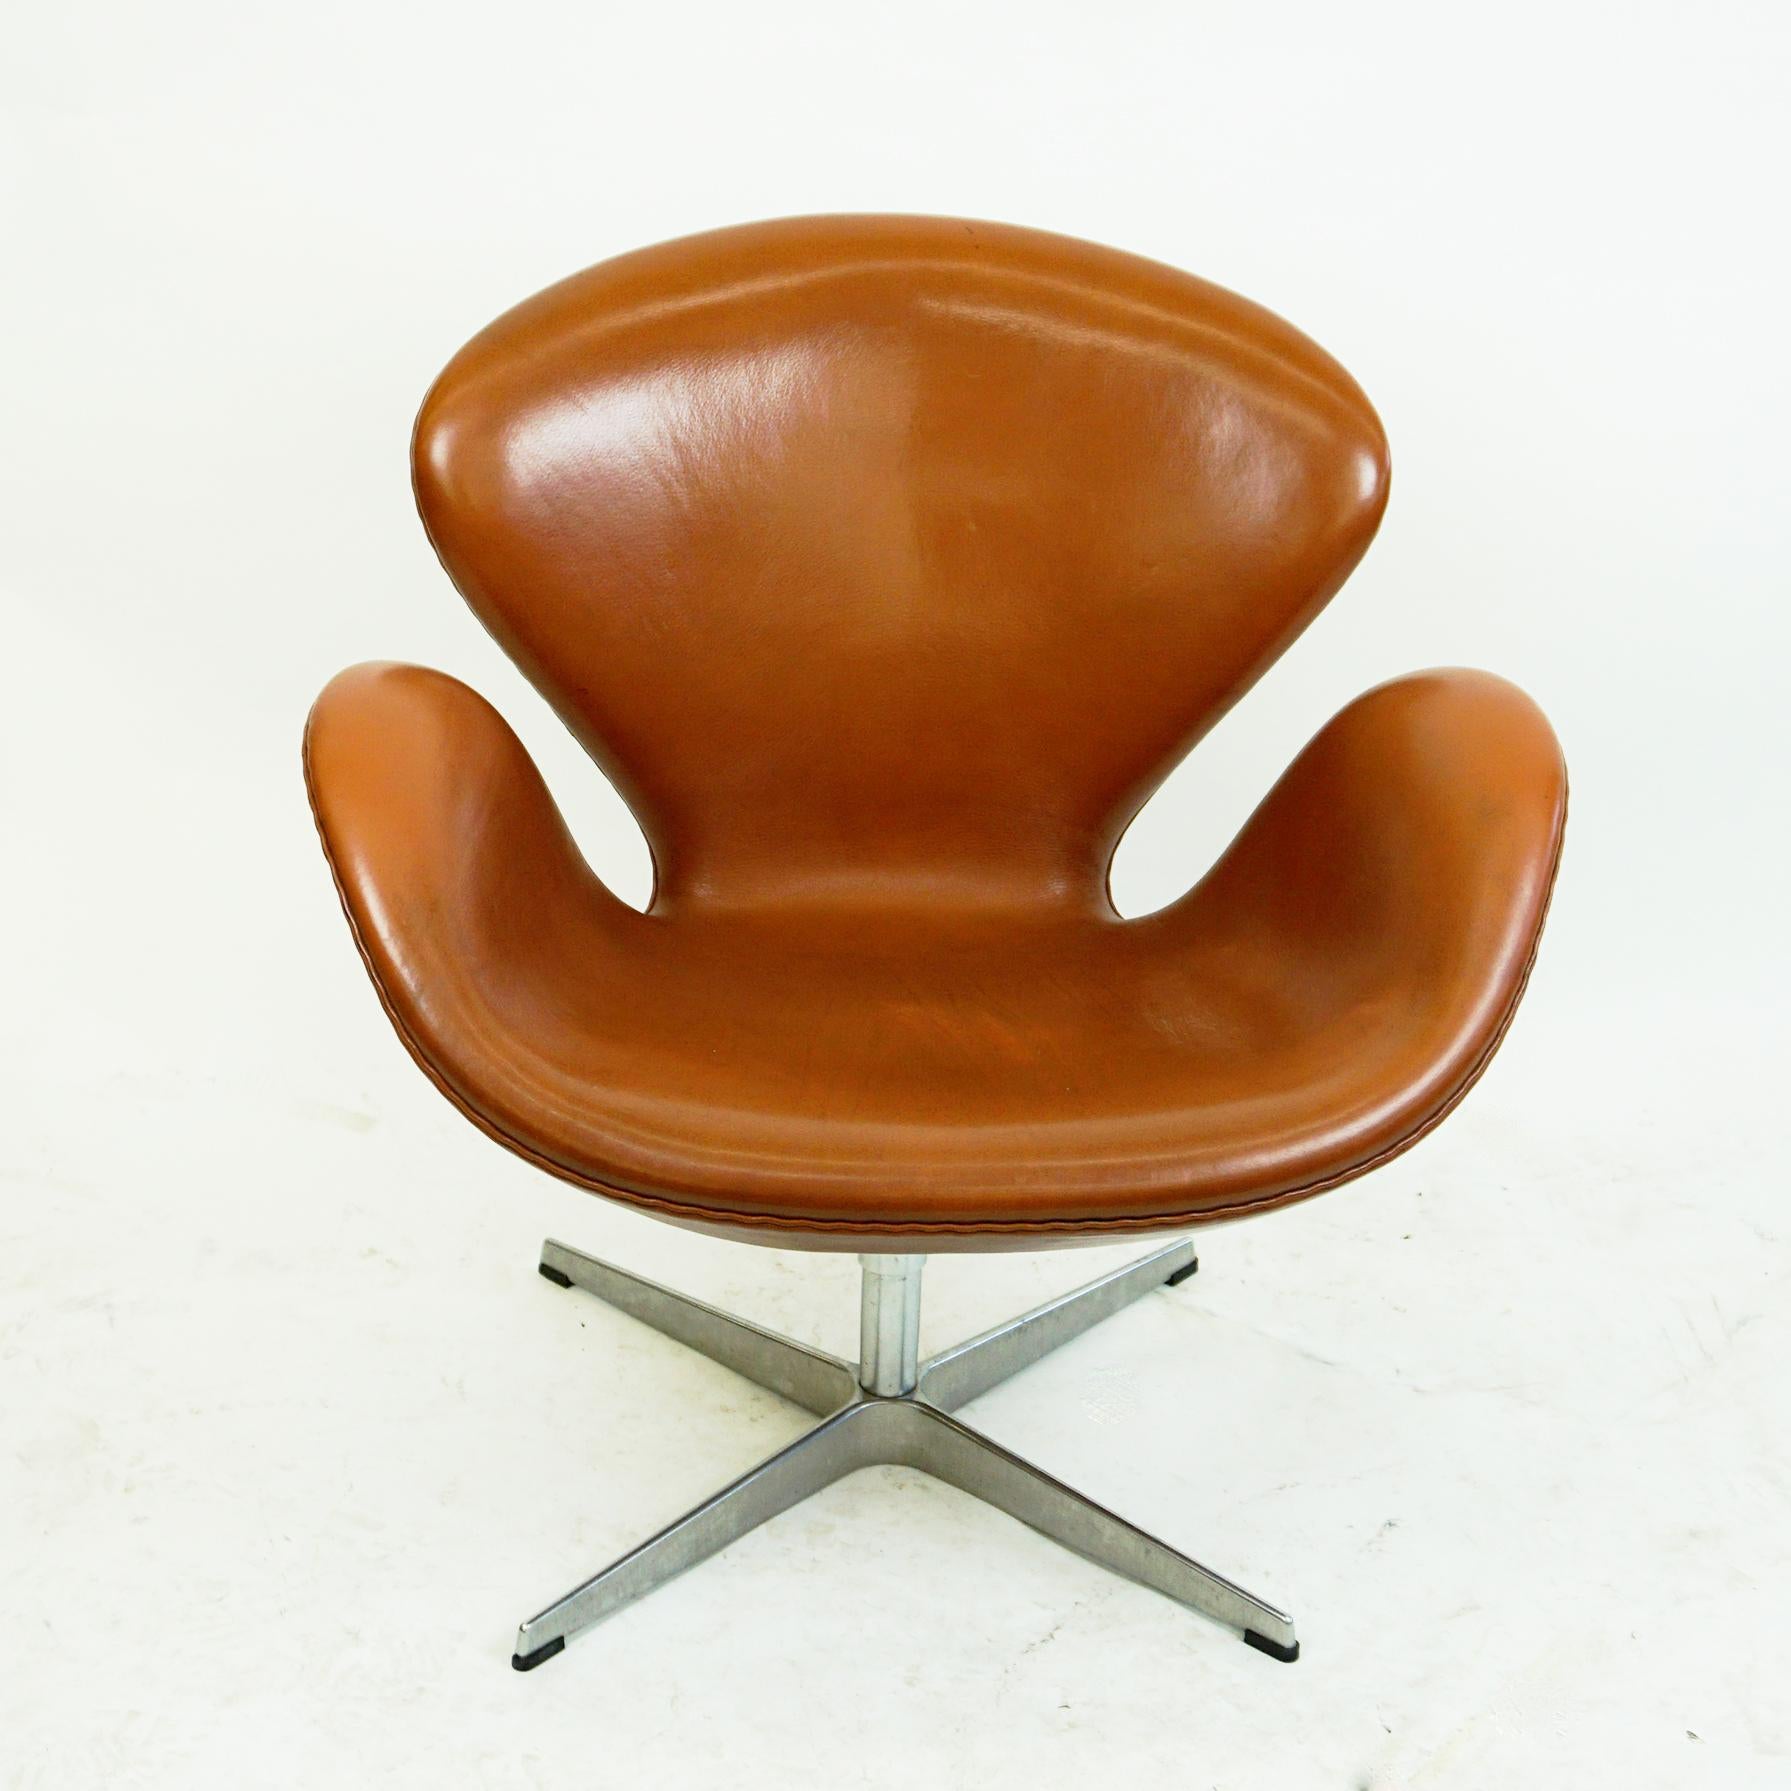 Schöne braune Lederschwan-Sessel Modell 3320, entworfen von Arne Jacobsen 1958 für das SAS Royal Copenhagen Hotel, das 1960 eröffnet wurde. Dieses Exemplar wurde von Fritz Hansen 2008 hergestellt, wie Sie auf dem Originaletikett sehen können. Er hat